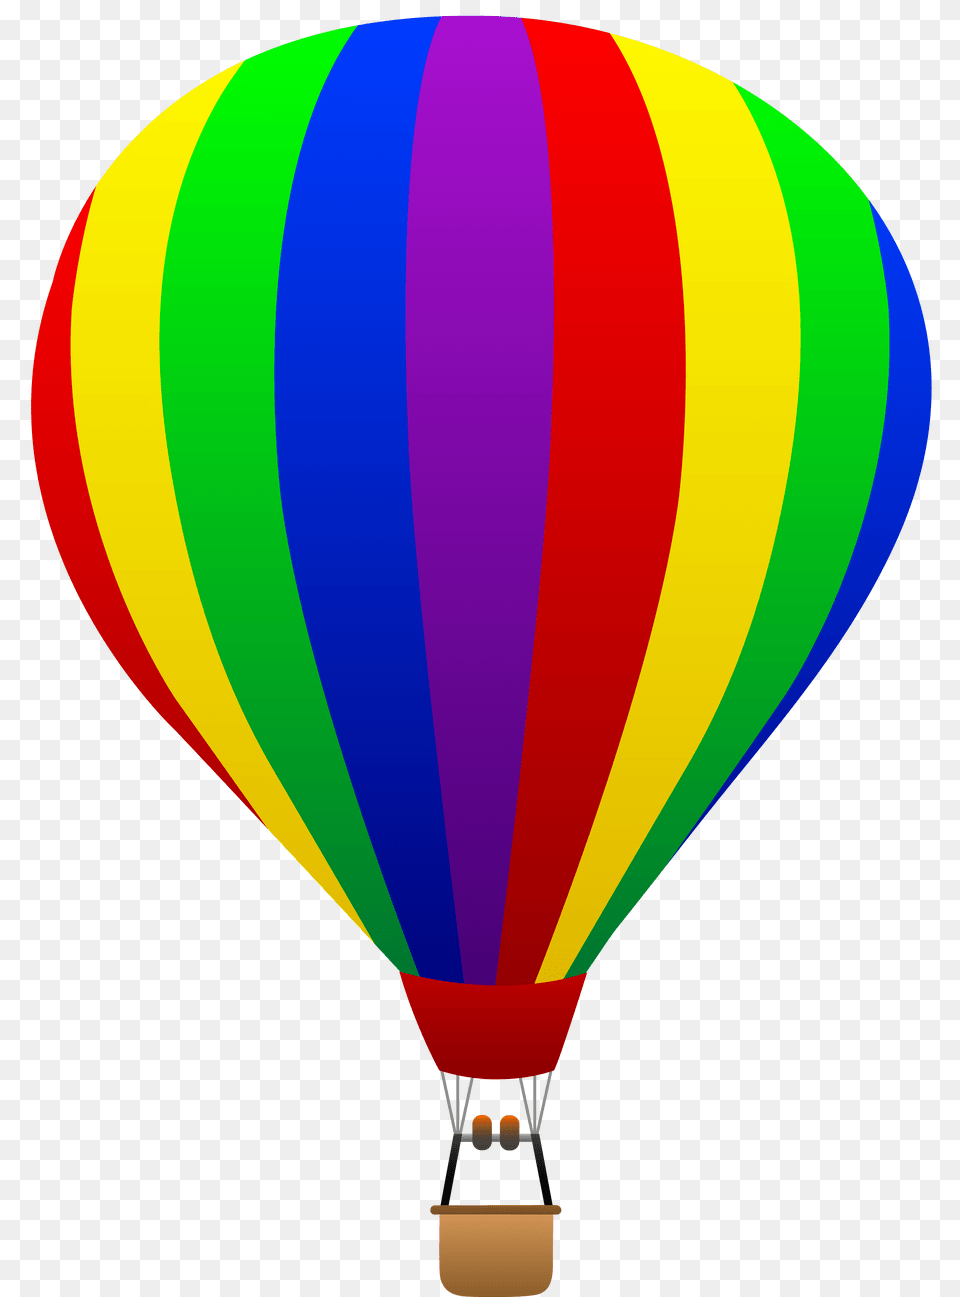 Drawn Hot Air Balloon, Aircraft, Hot Air Balloon, Transportation, Vehicle Free Transparent Png